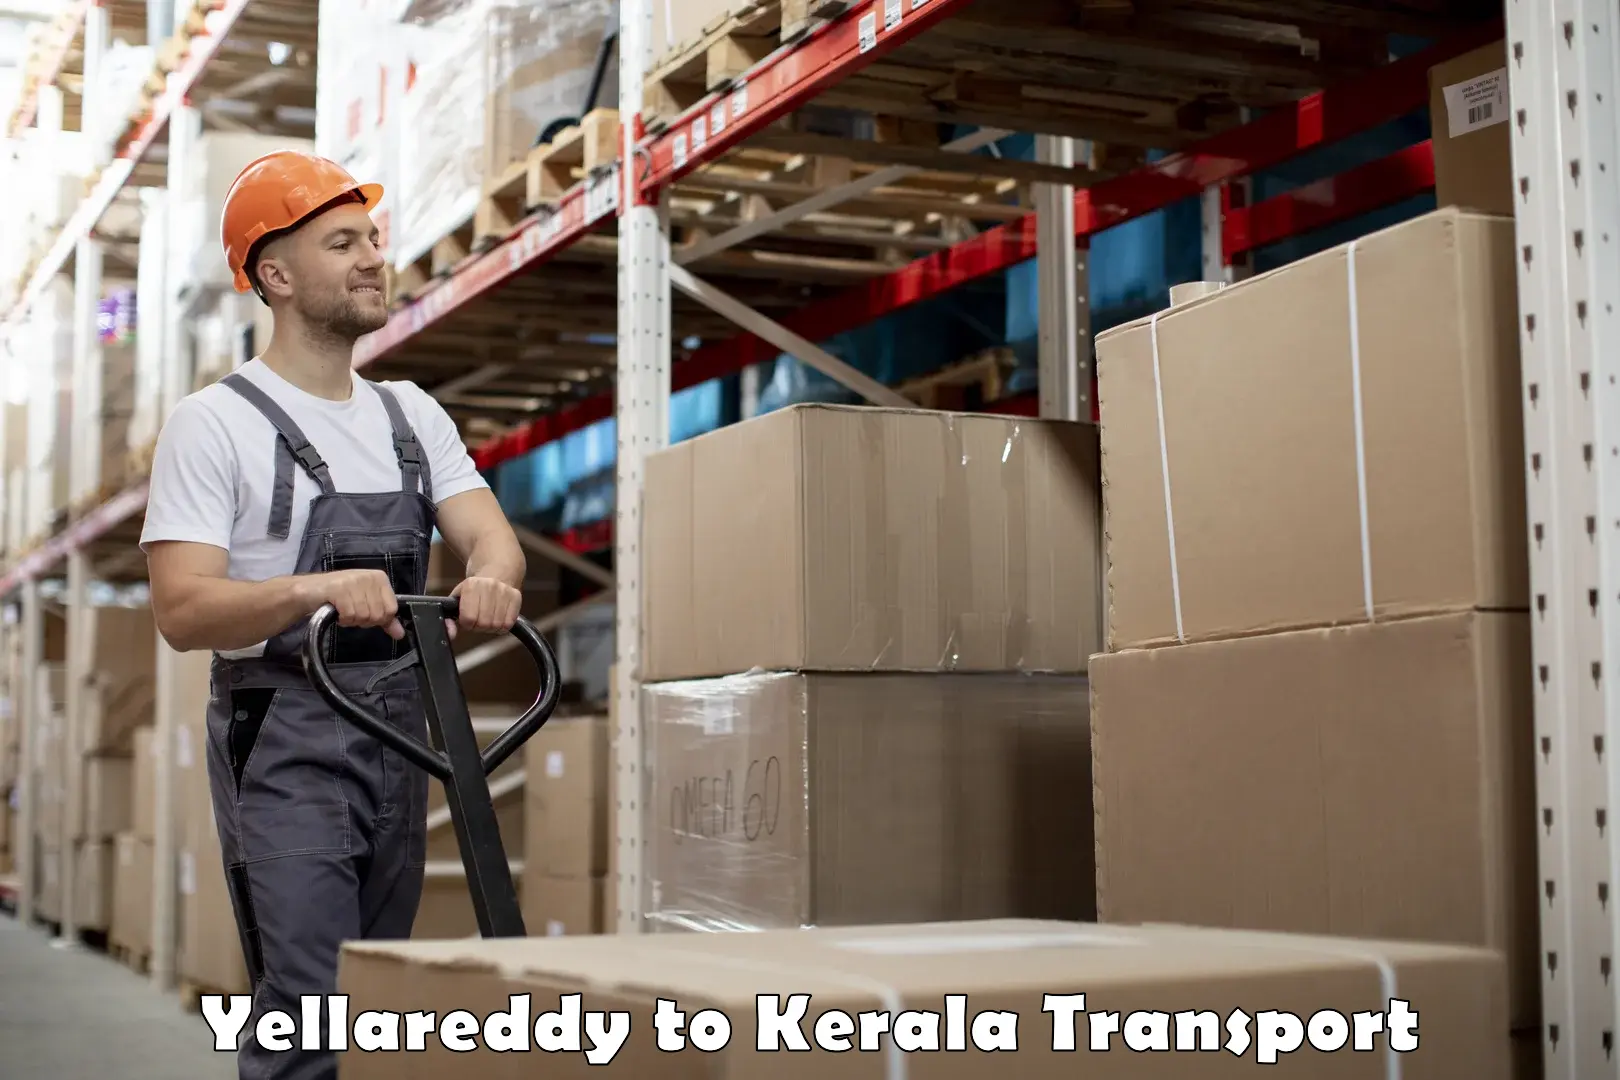 Transport in sharing Yellareddy to Ramankary